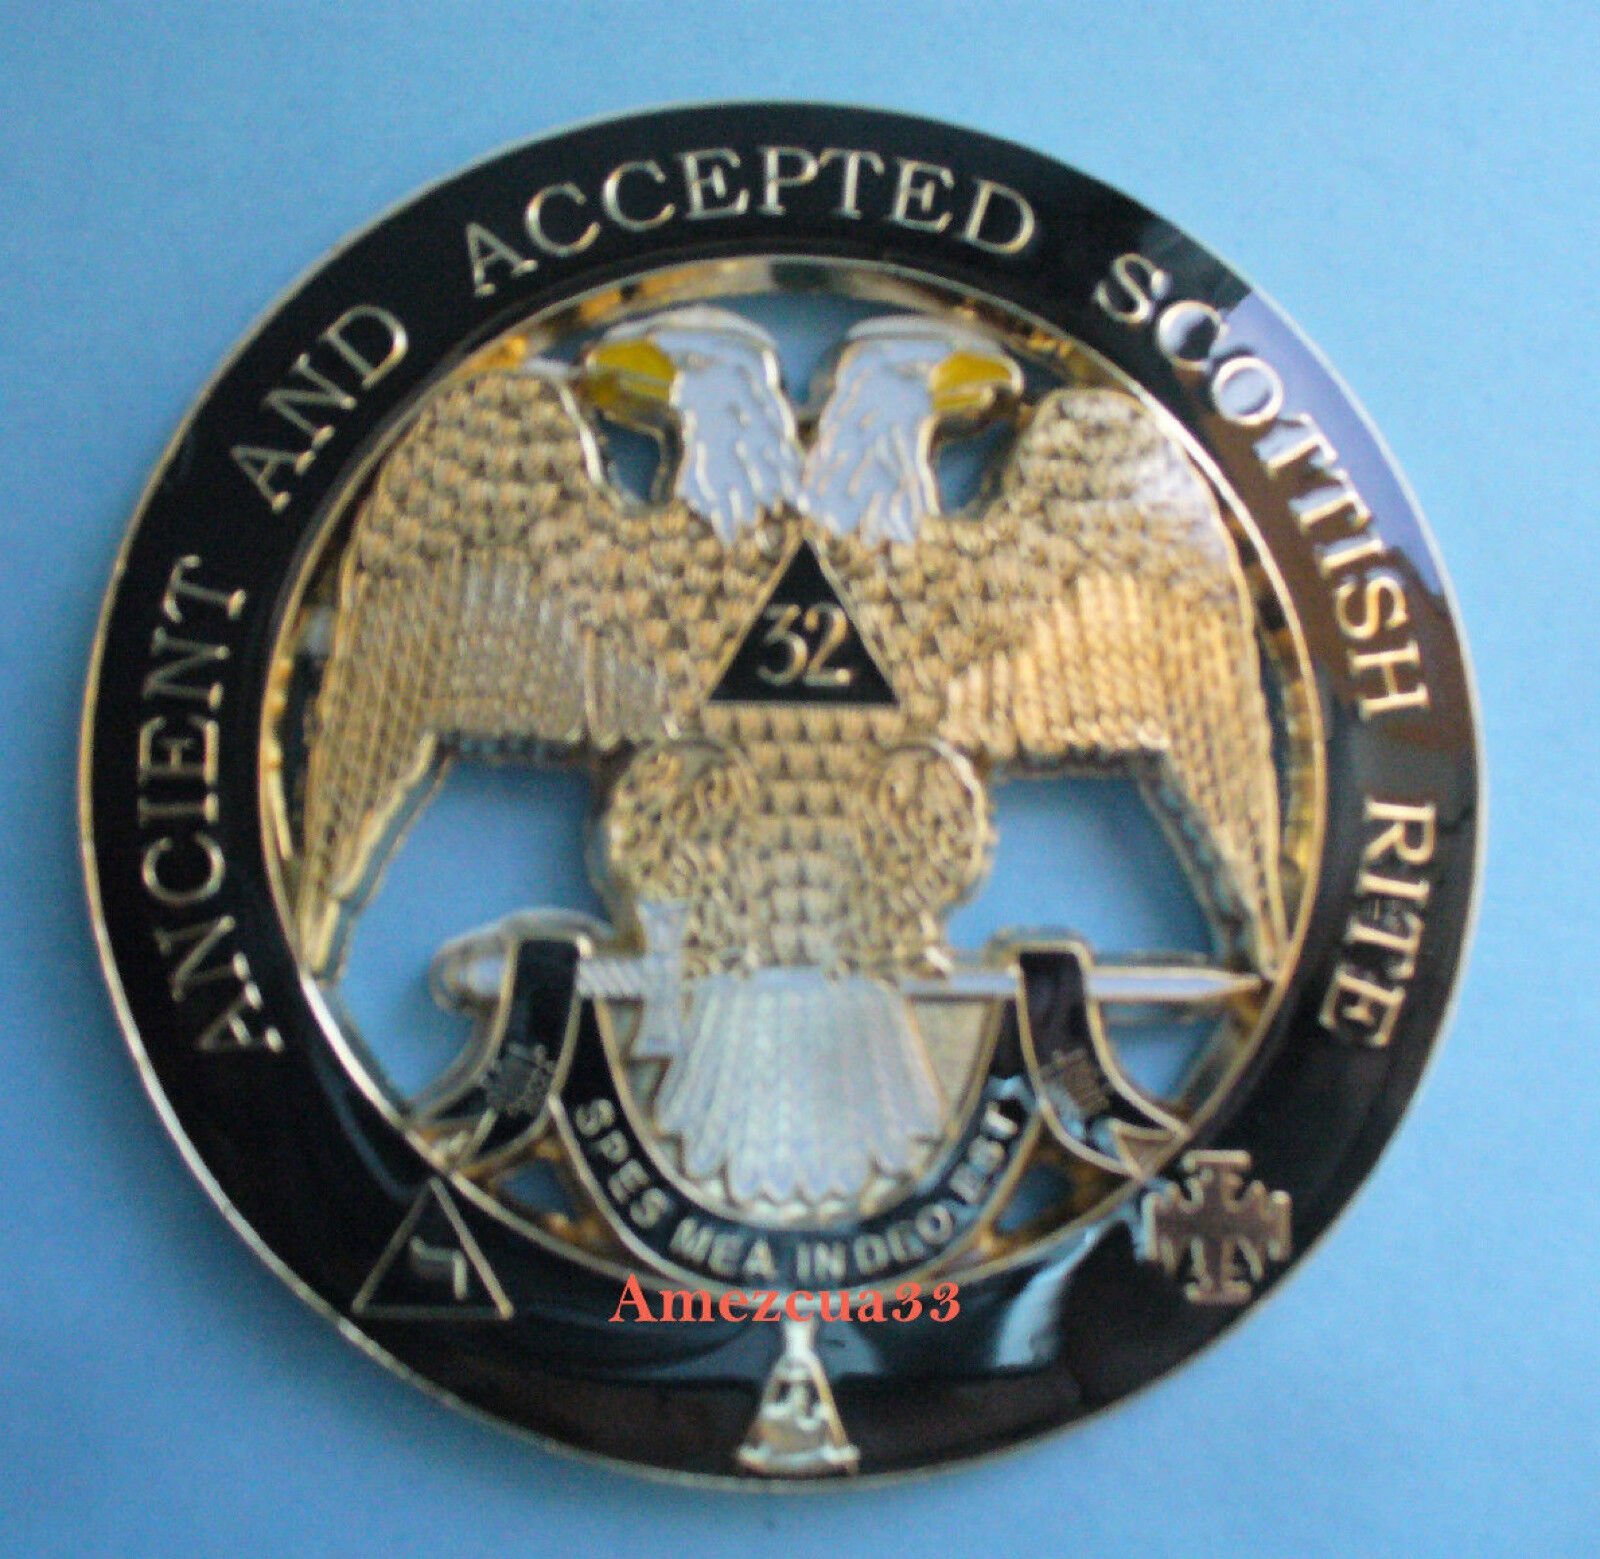 Masonry 32nd Degree Cut Out Car Emblem Scottish Rite Auto Rear Emblem Masonic